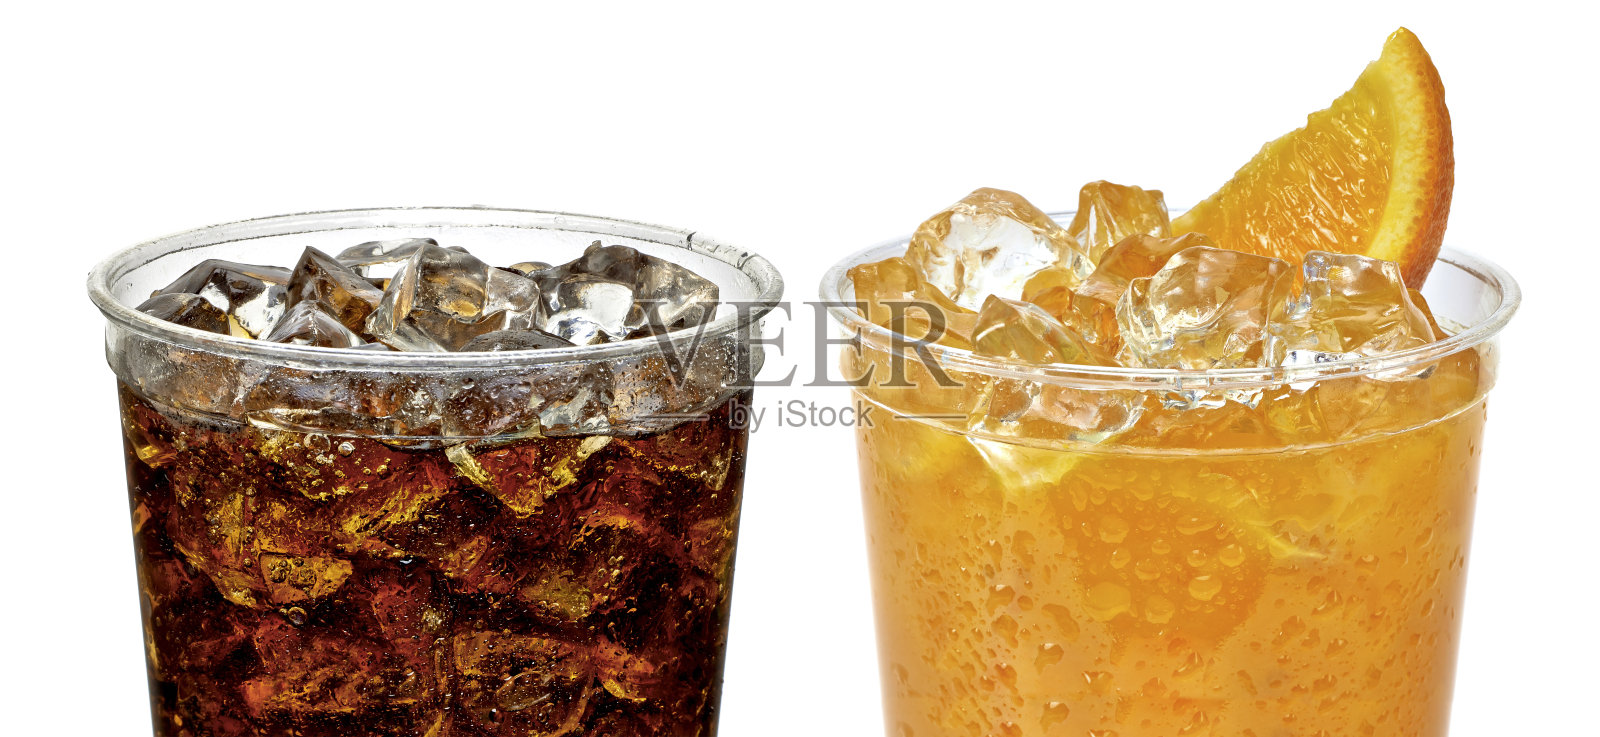 可乐和橙汁装在加碎冰的杯子里照片摄影图片